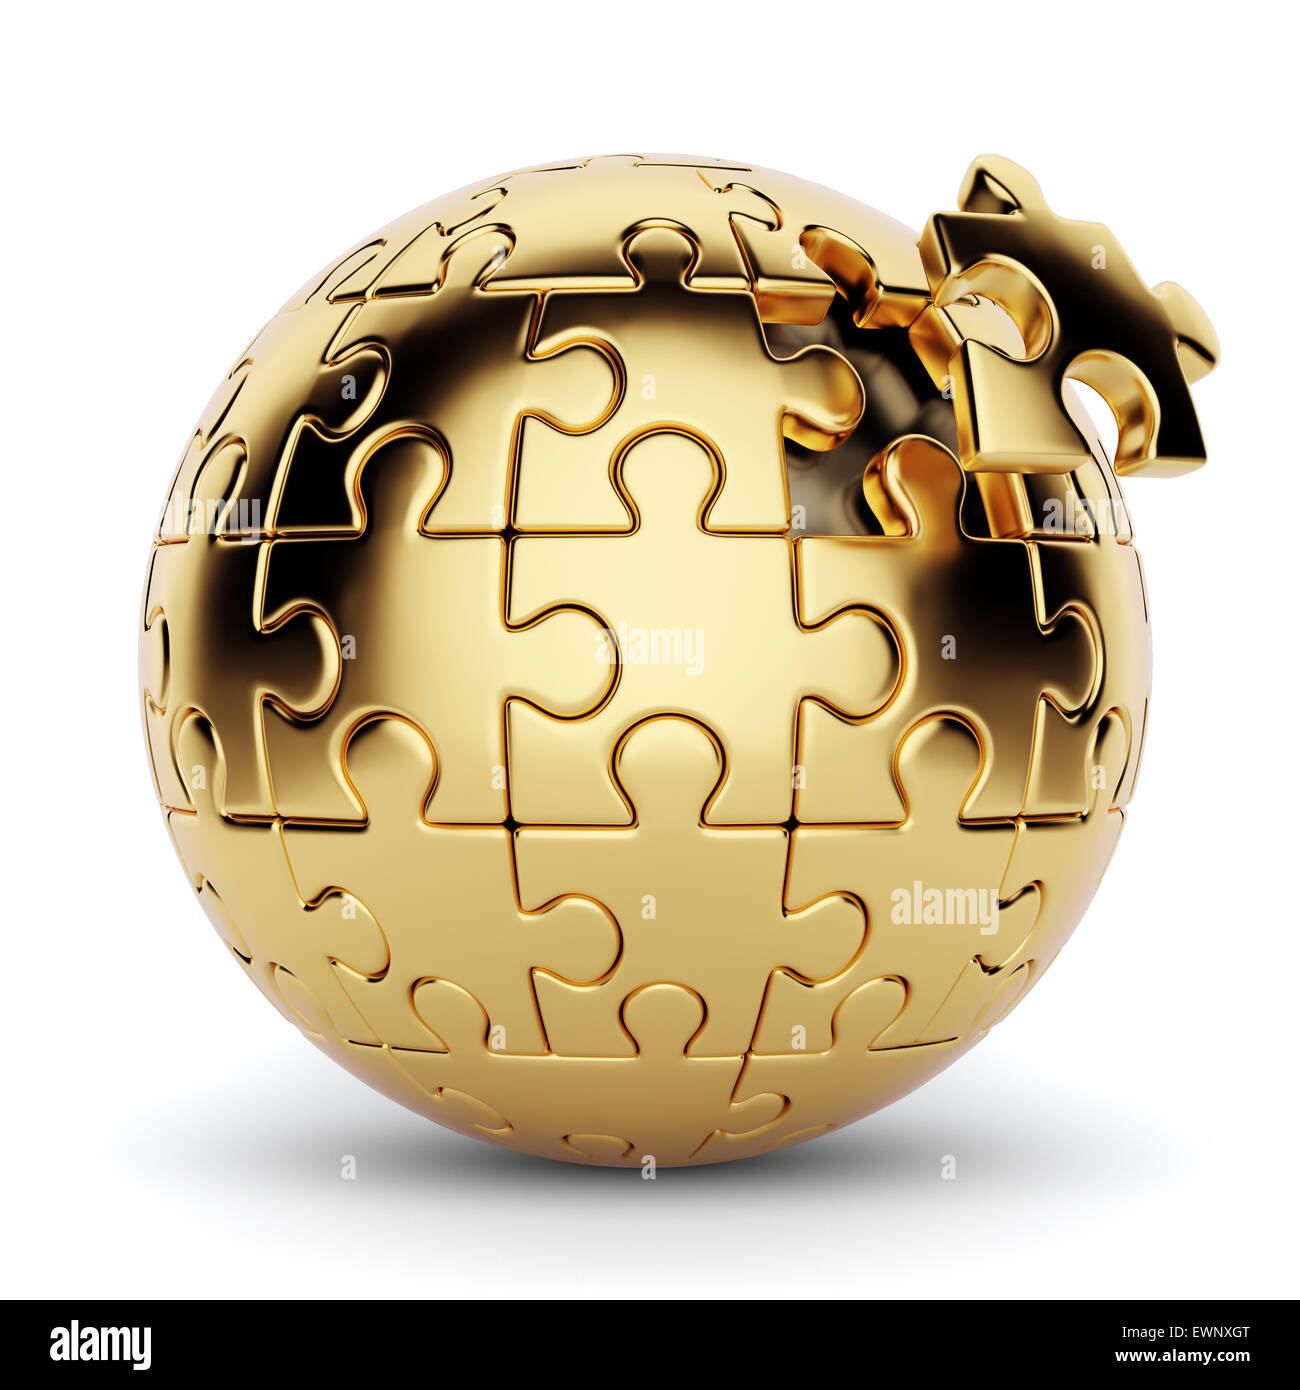 Representación 3D de un puzzle esférico de oro con una pieza desconectado. Aislado sobre fondo blanco. Foto de stock